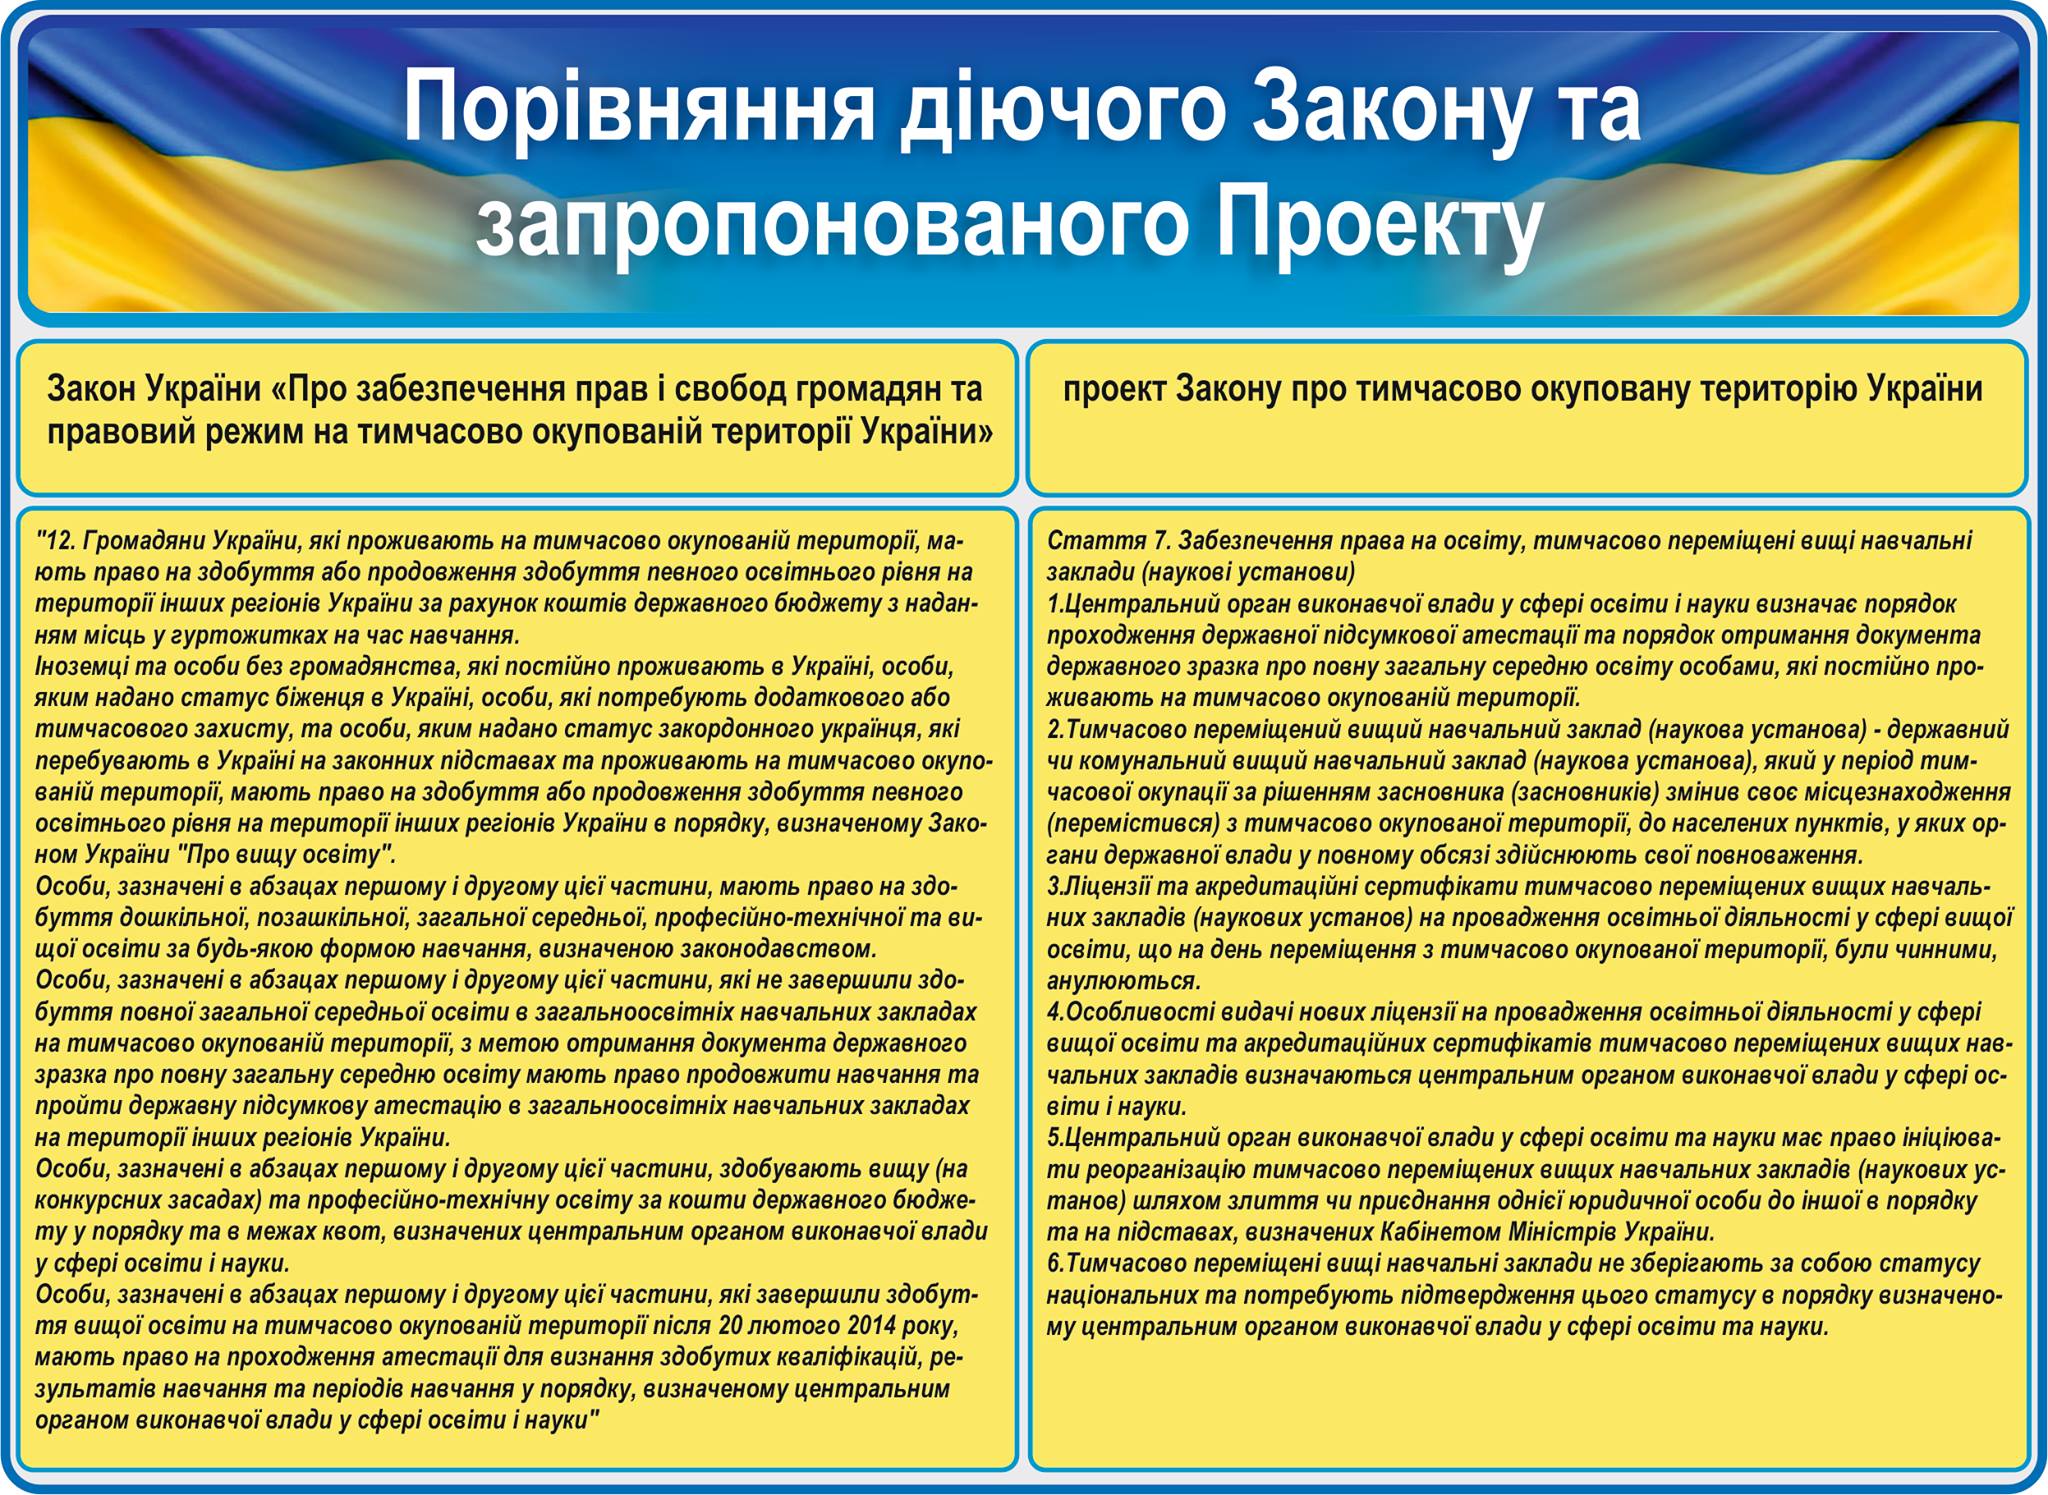 Проект Закону про тимчасово окуповану територію України крізь призму освіти (аналіз) - картинка 2